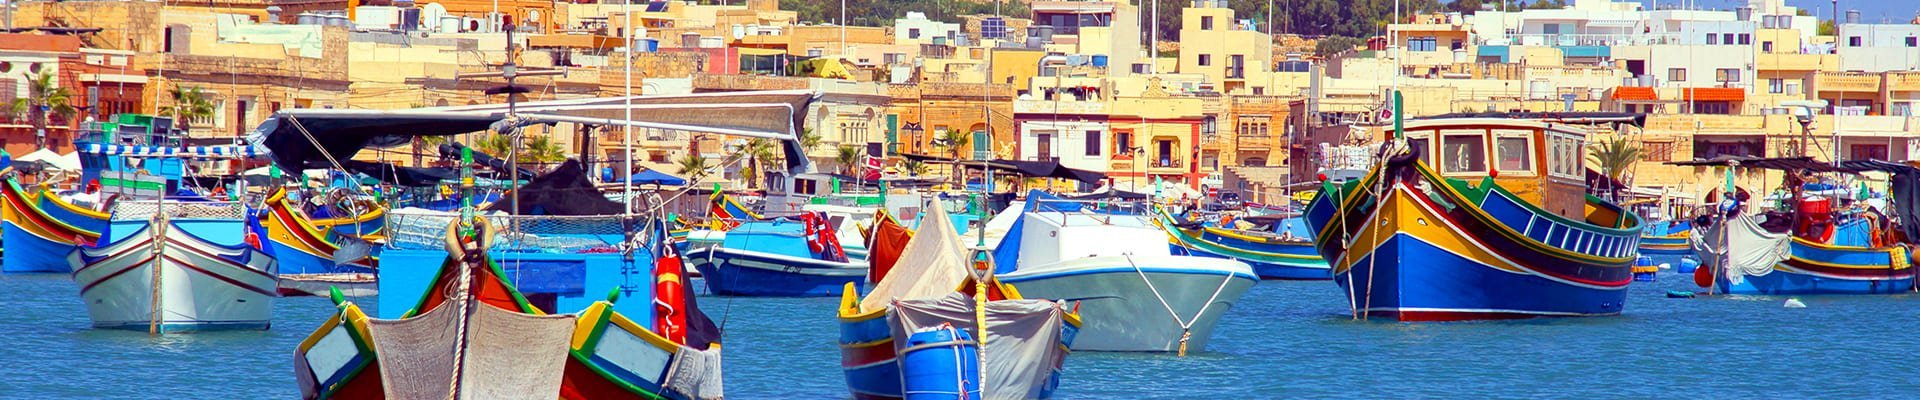 Marsaxlokk op Malta